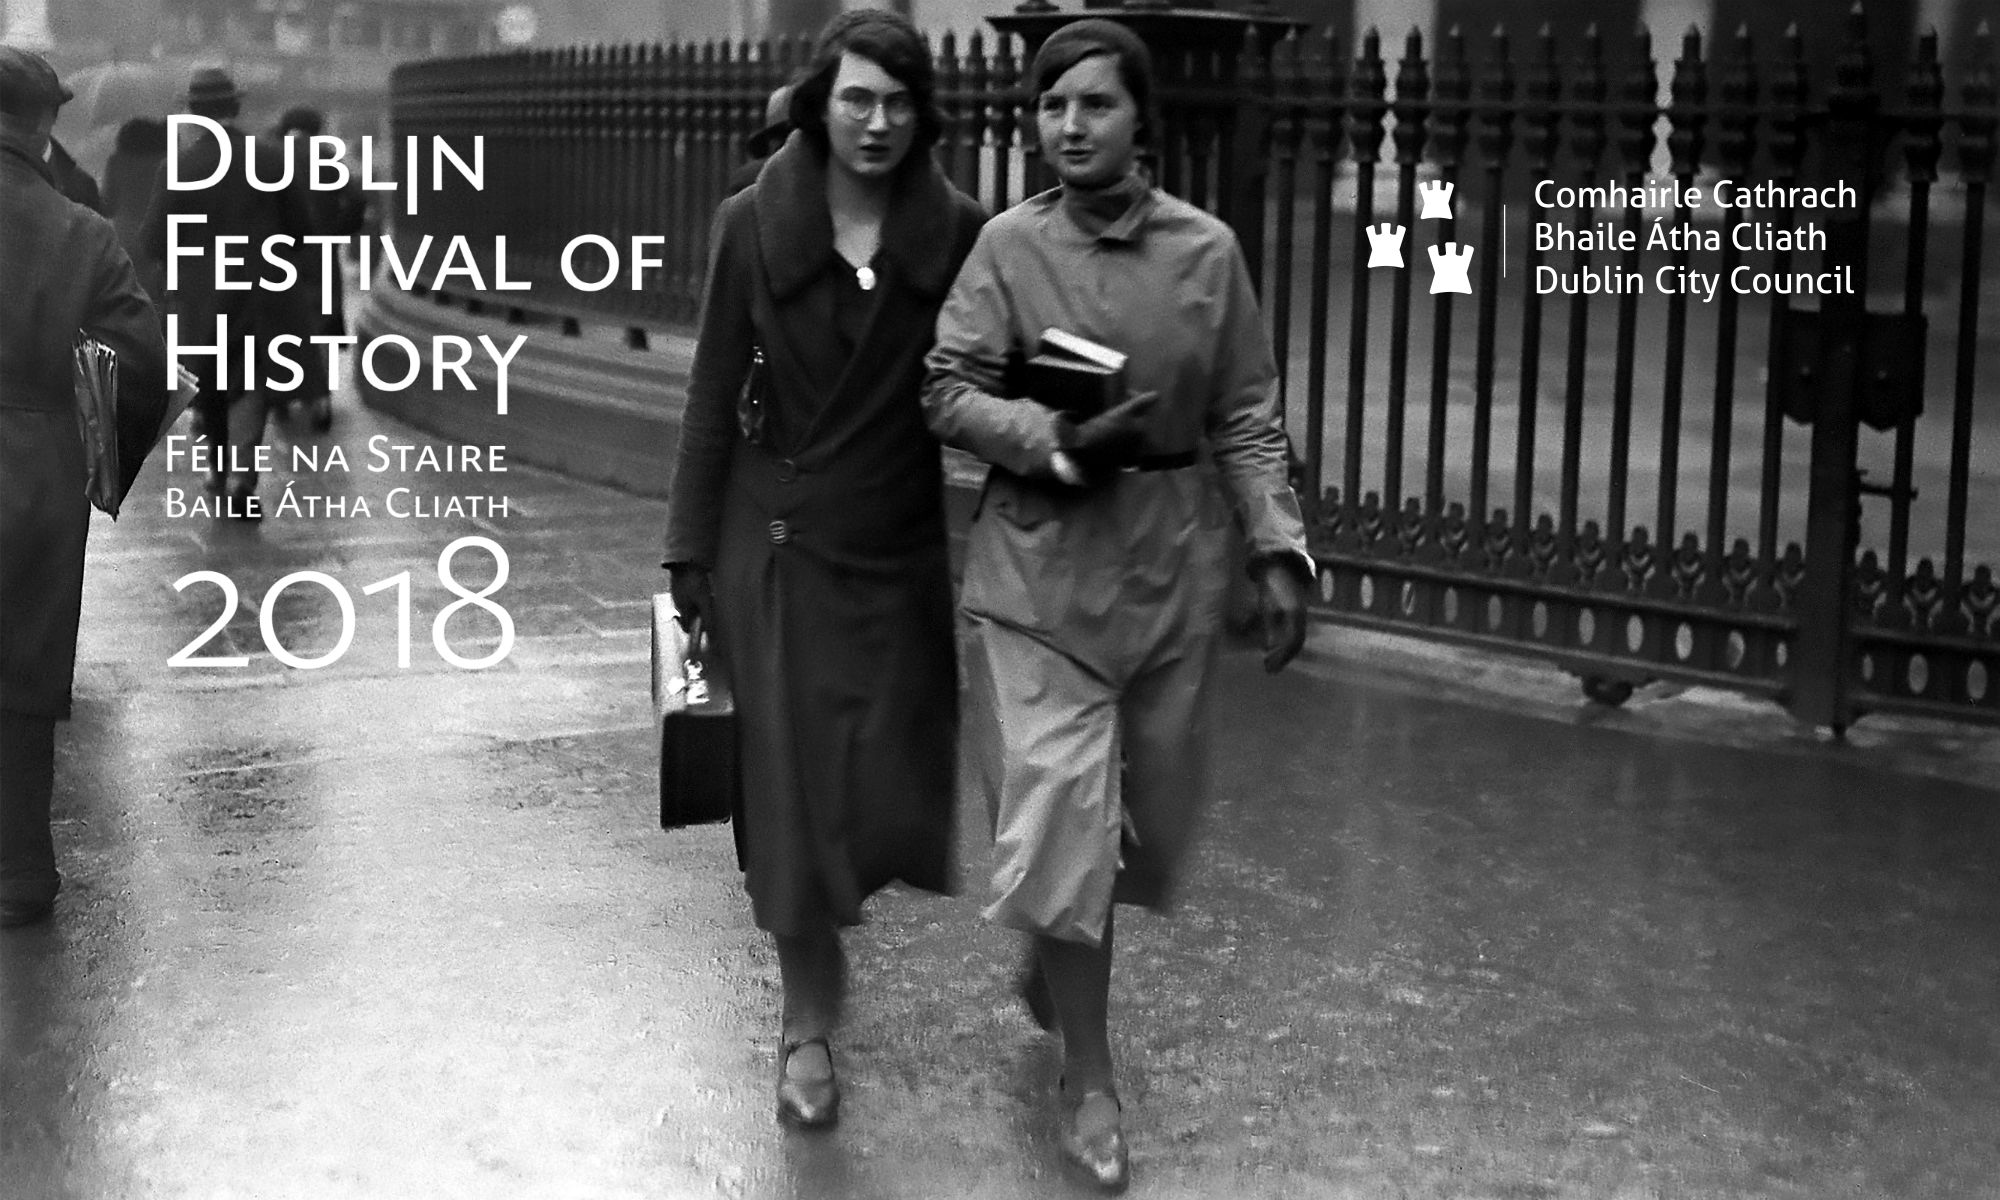 Dublin Festival of History 2018